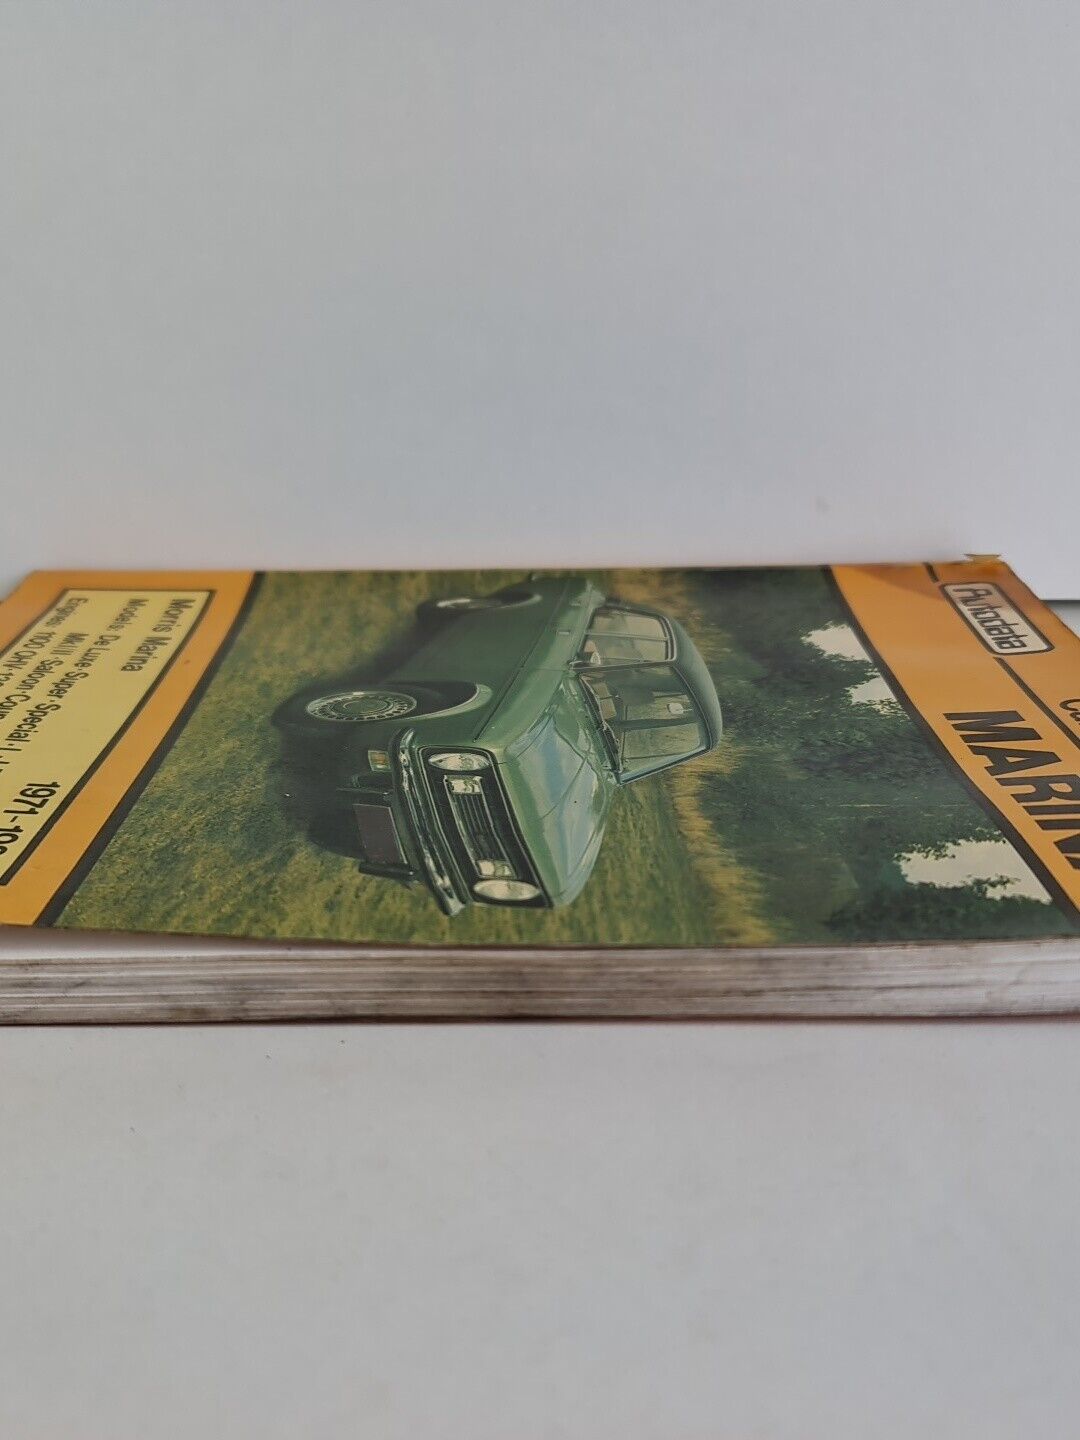 Moris Marina 1971-1980 Car Repair Manual - Autodata (1983)